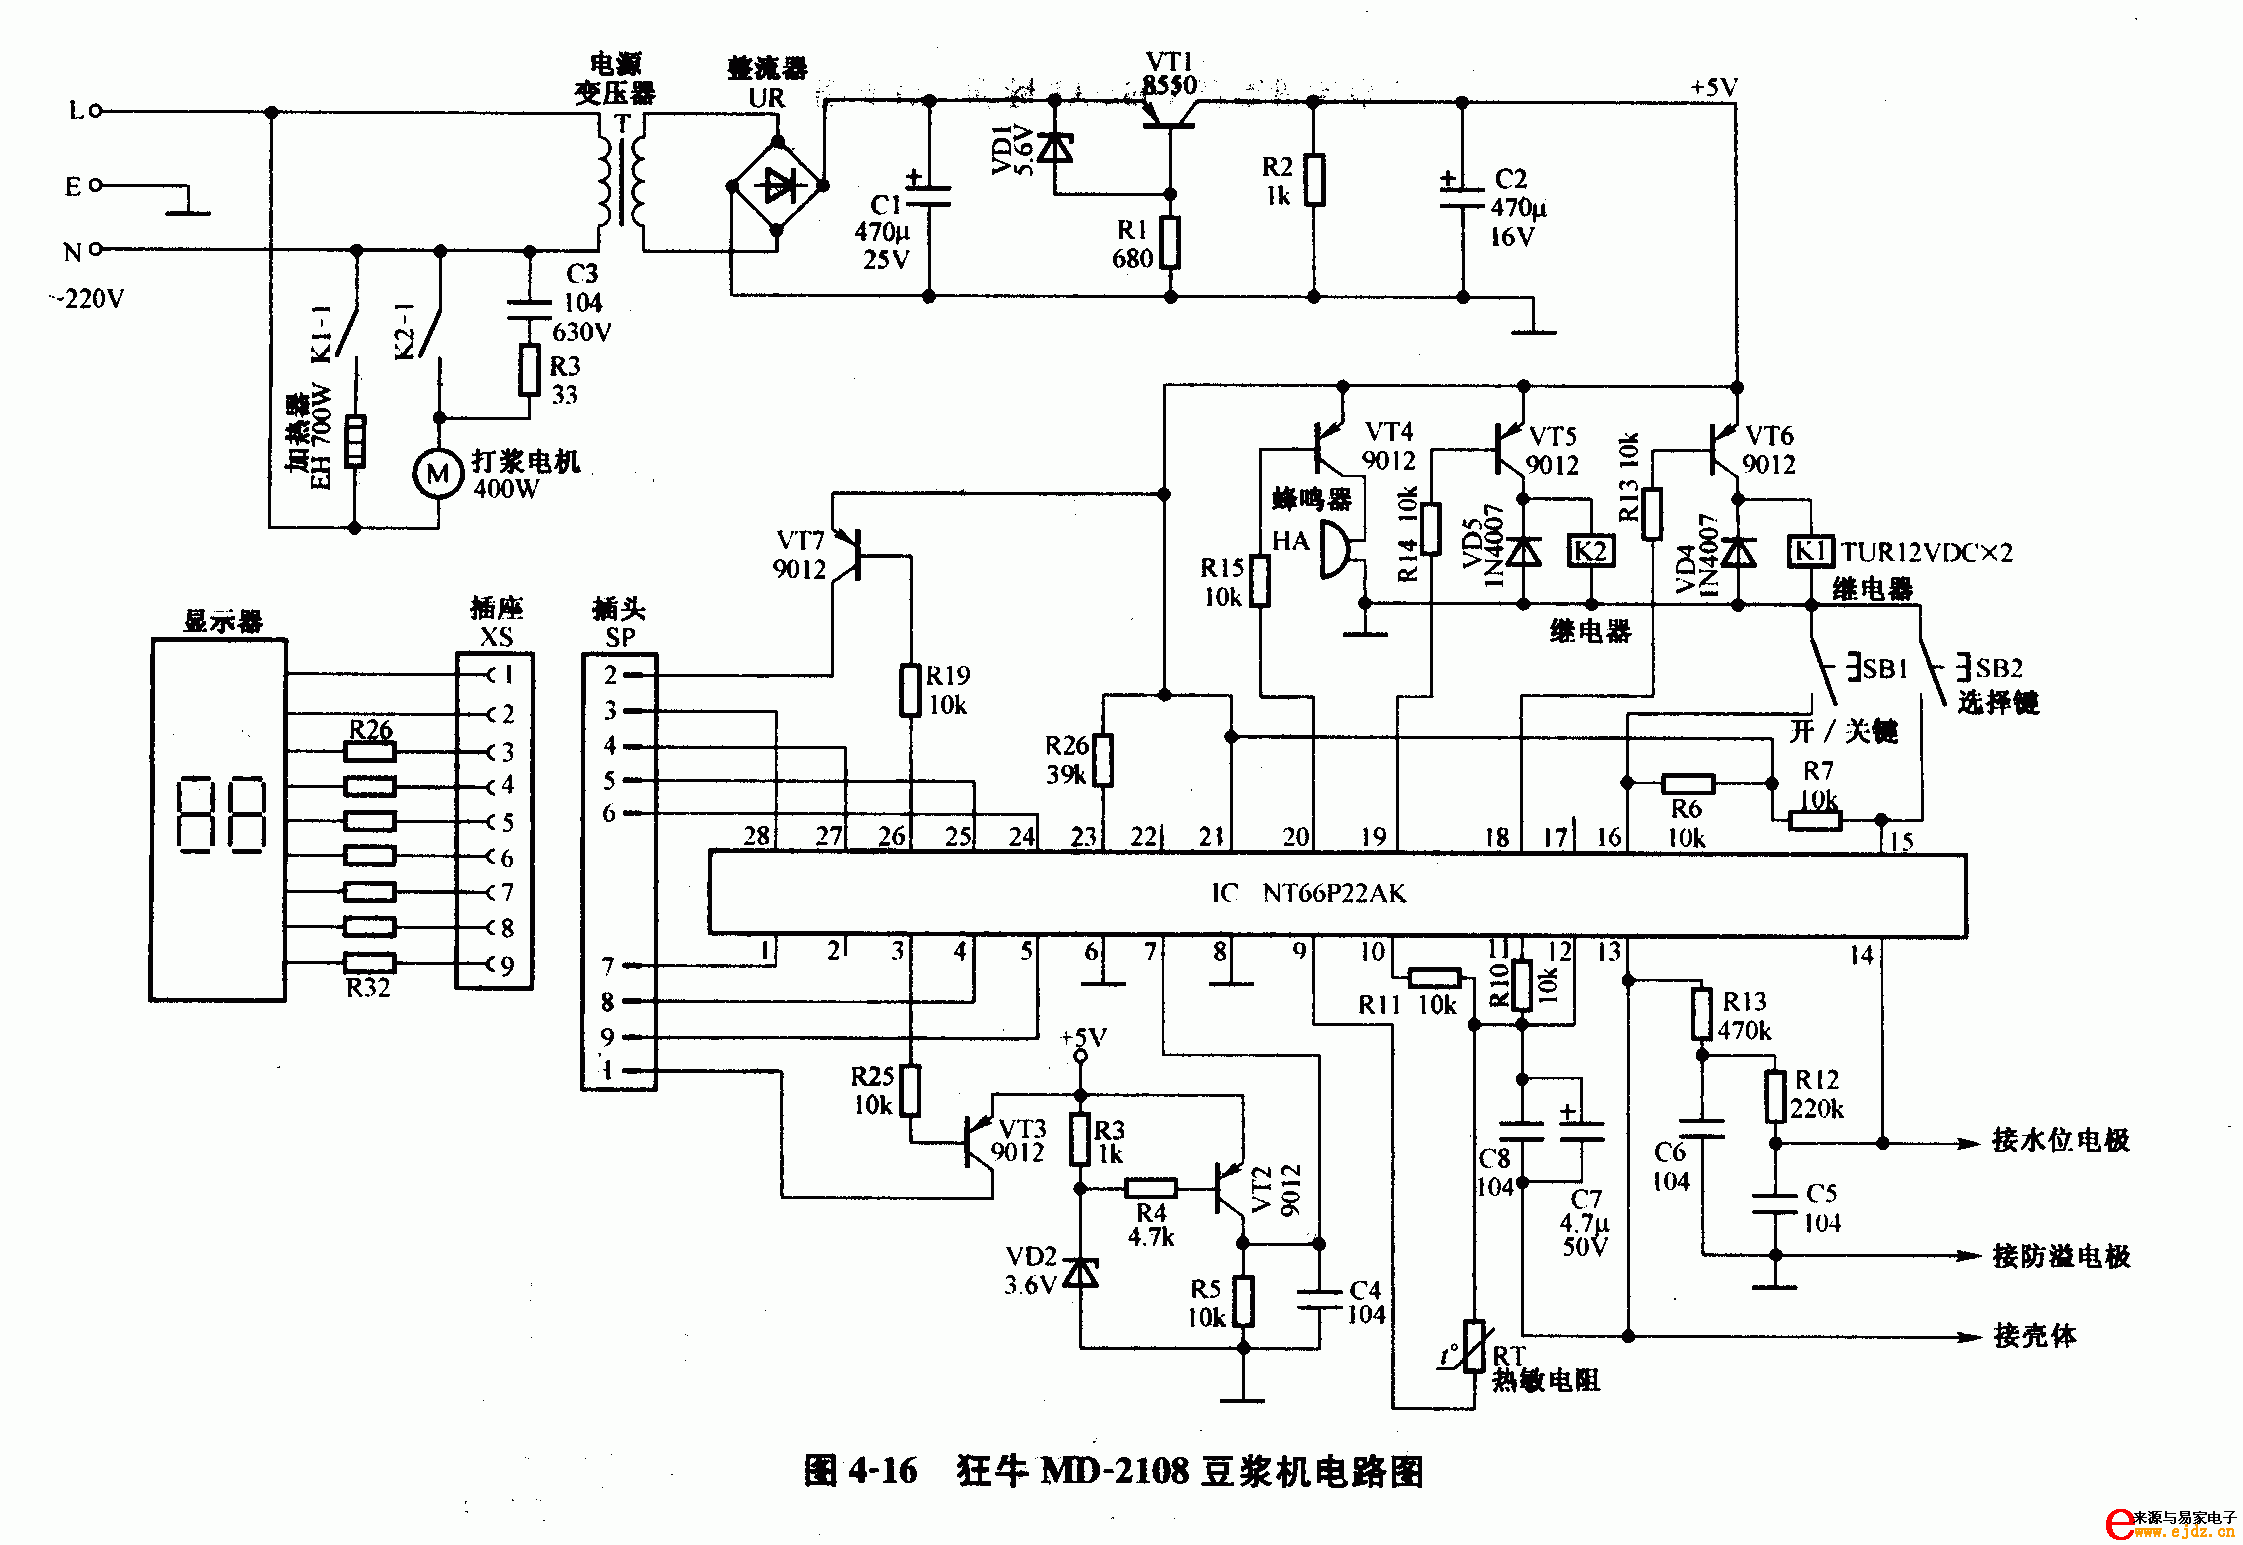 狂牛MD-2108豆浆机电路图